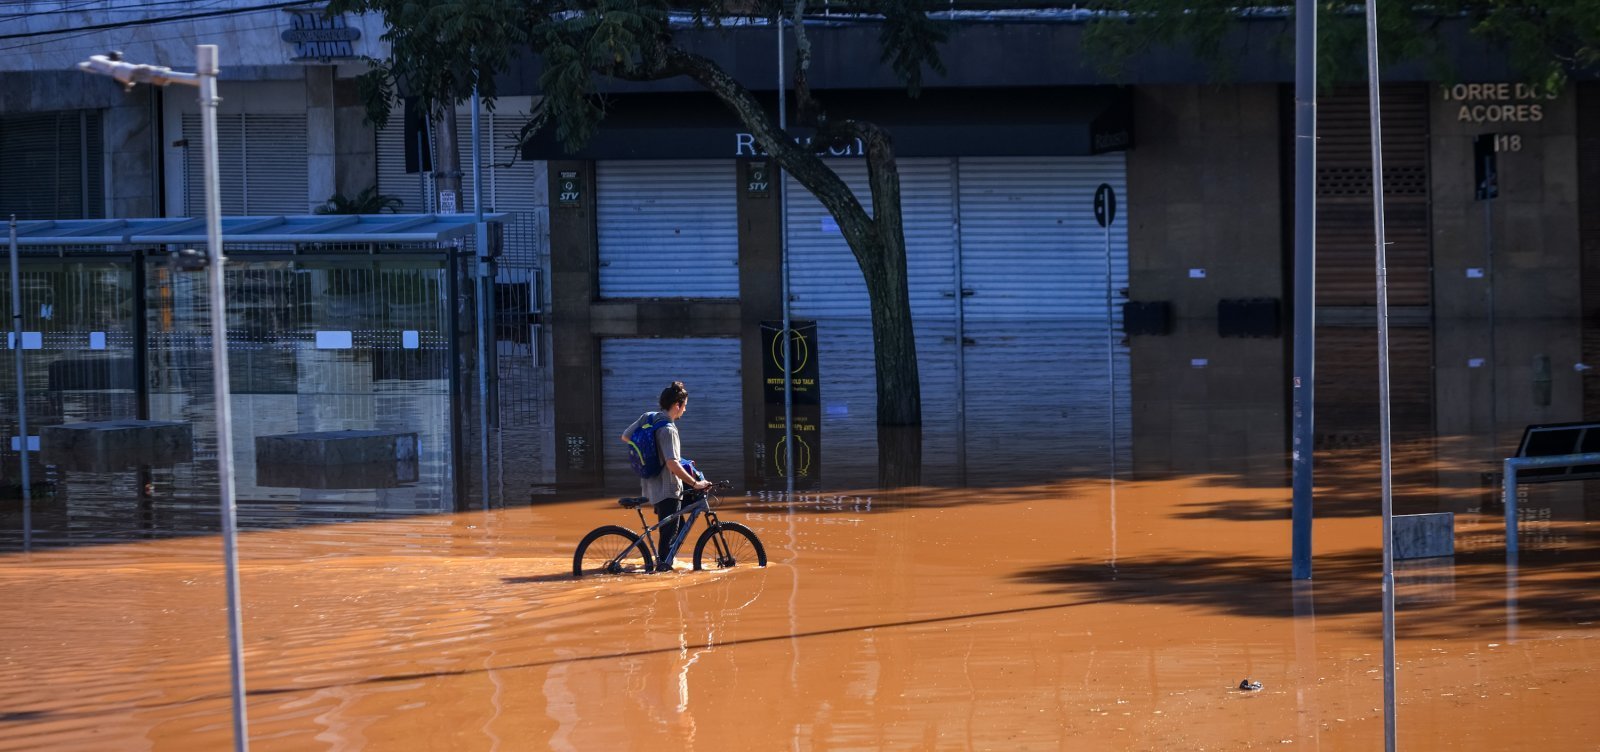 Defesa Civil do Rio Grande do Sul alerta para novos riscos de "inundações severas"